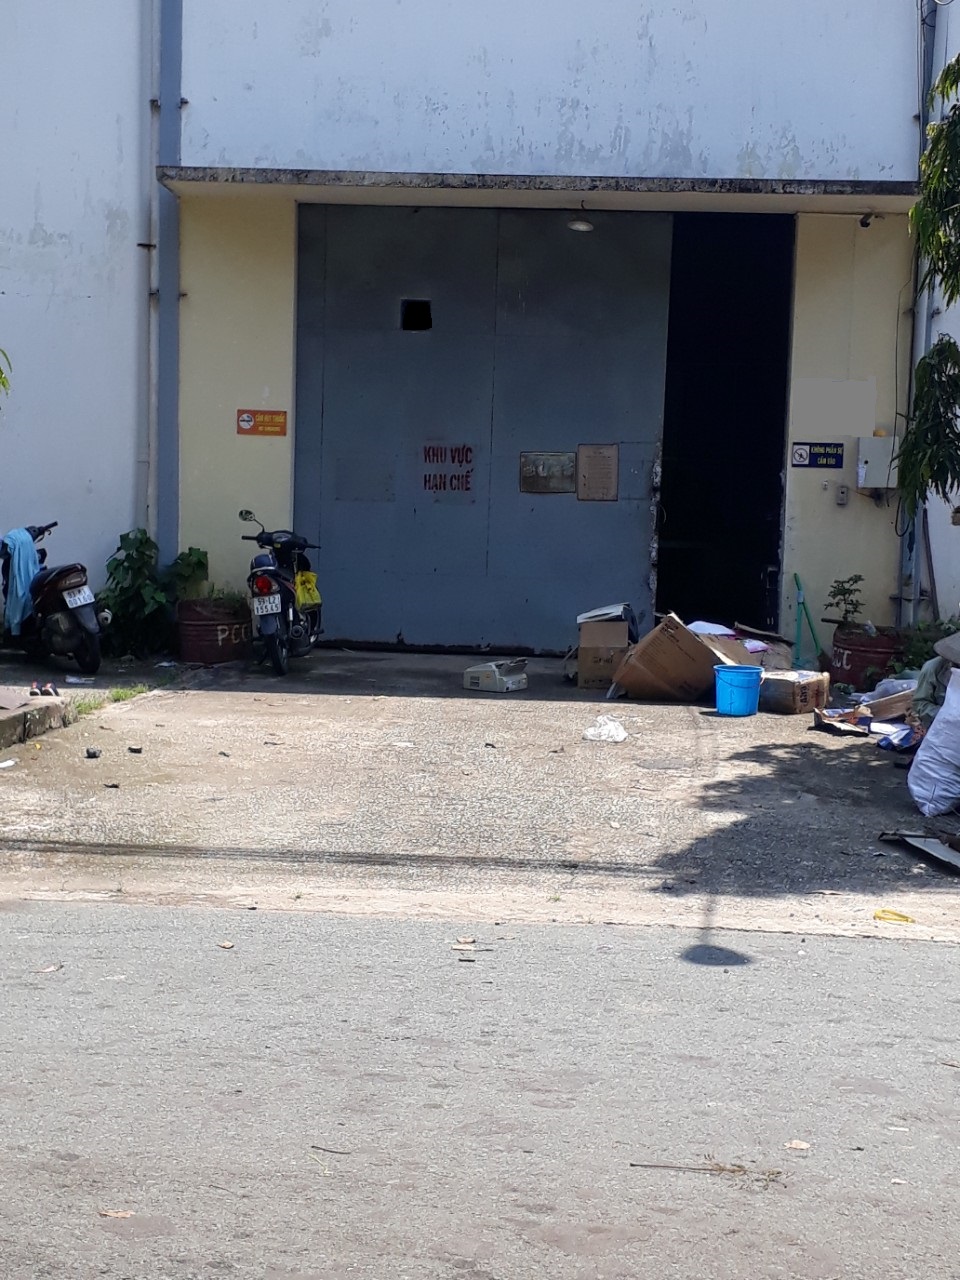 Cho thuê kho bãi đường Nguyễn Hữu Thọ, Quận 7 DT 350m giá 26tr/th, có VP, WC sạch đẹp.